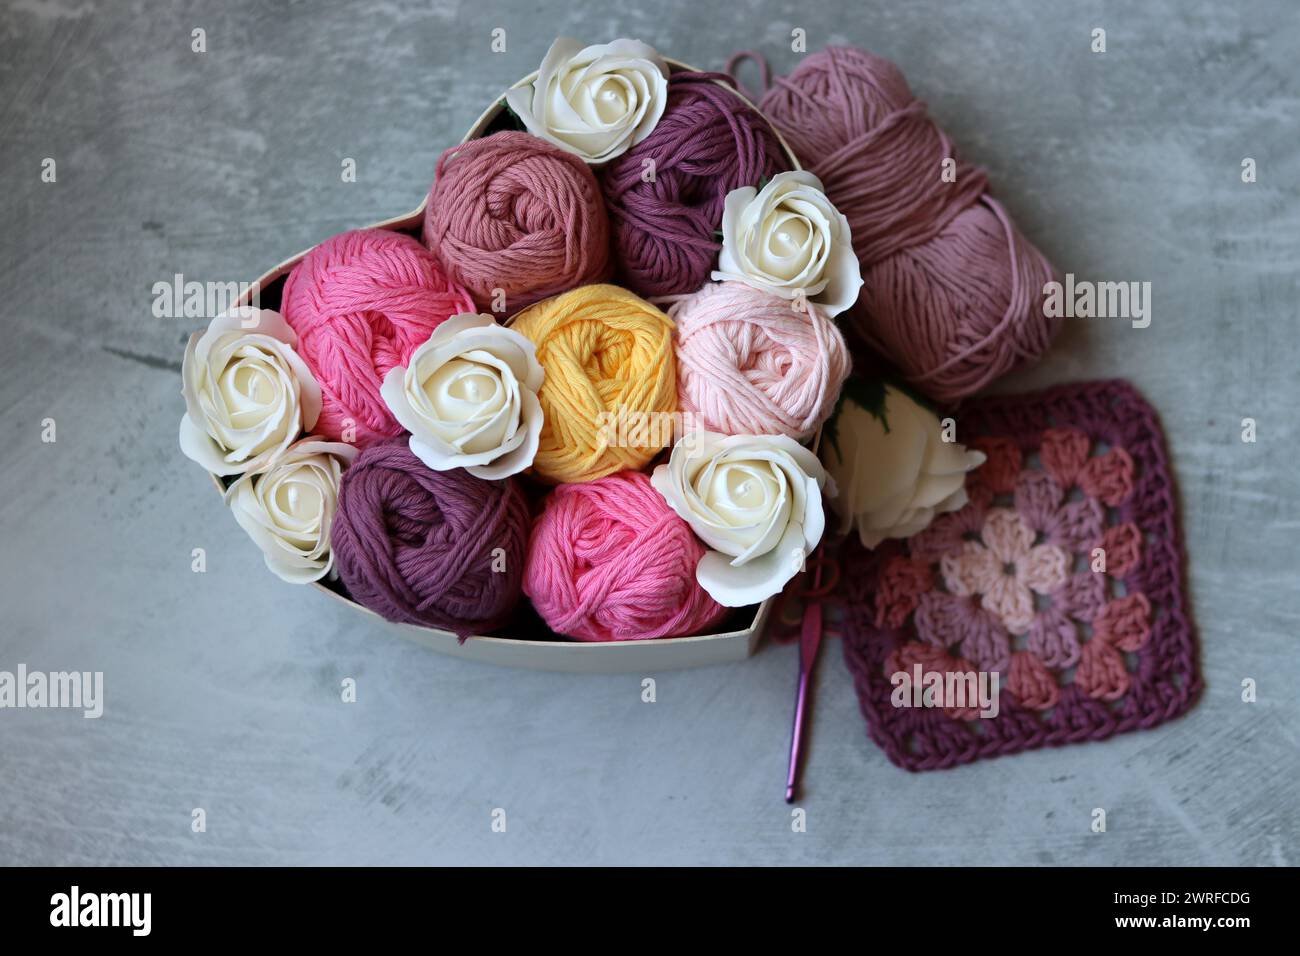 Boîte en forme de coeur avec des roses blanches et du fil de coton sur un fond gris. Texture de fil de coton gros plan photo. Concept d'art et d'artisanat. Banque D'Images